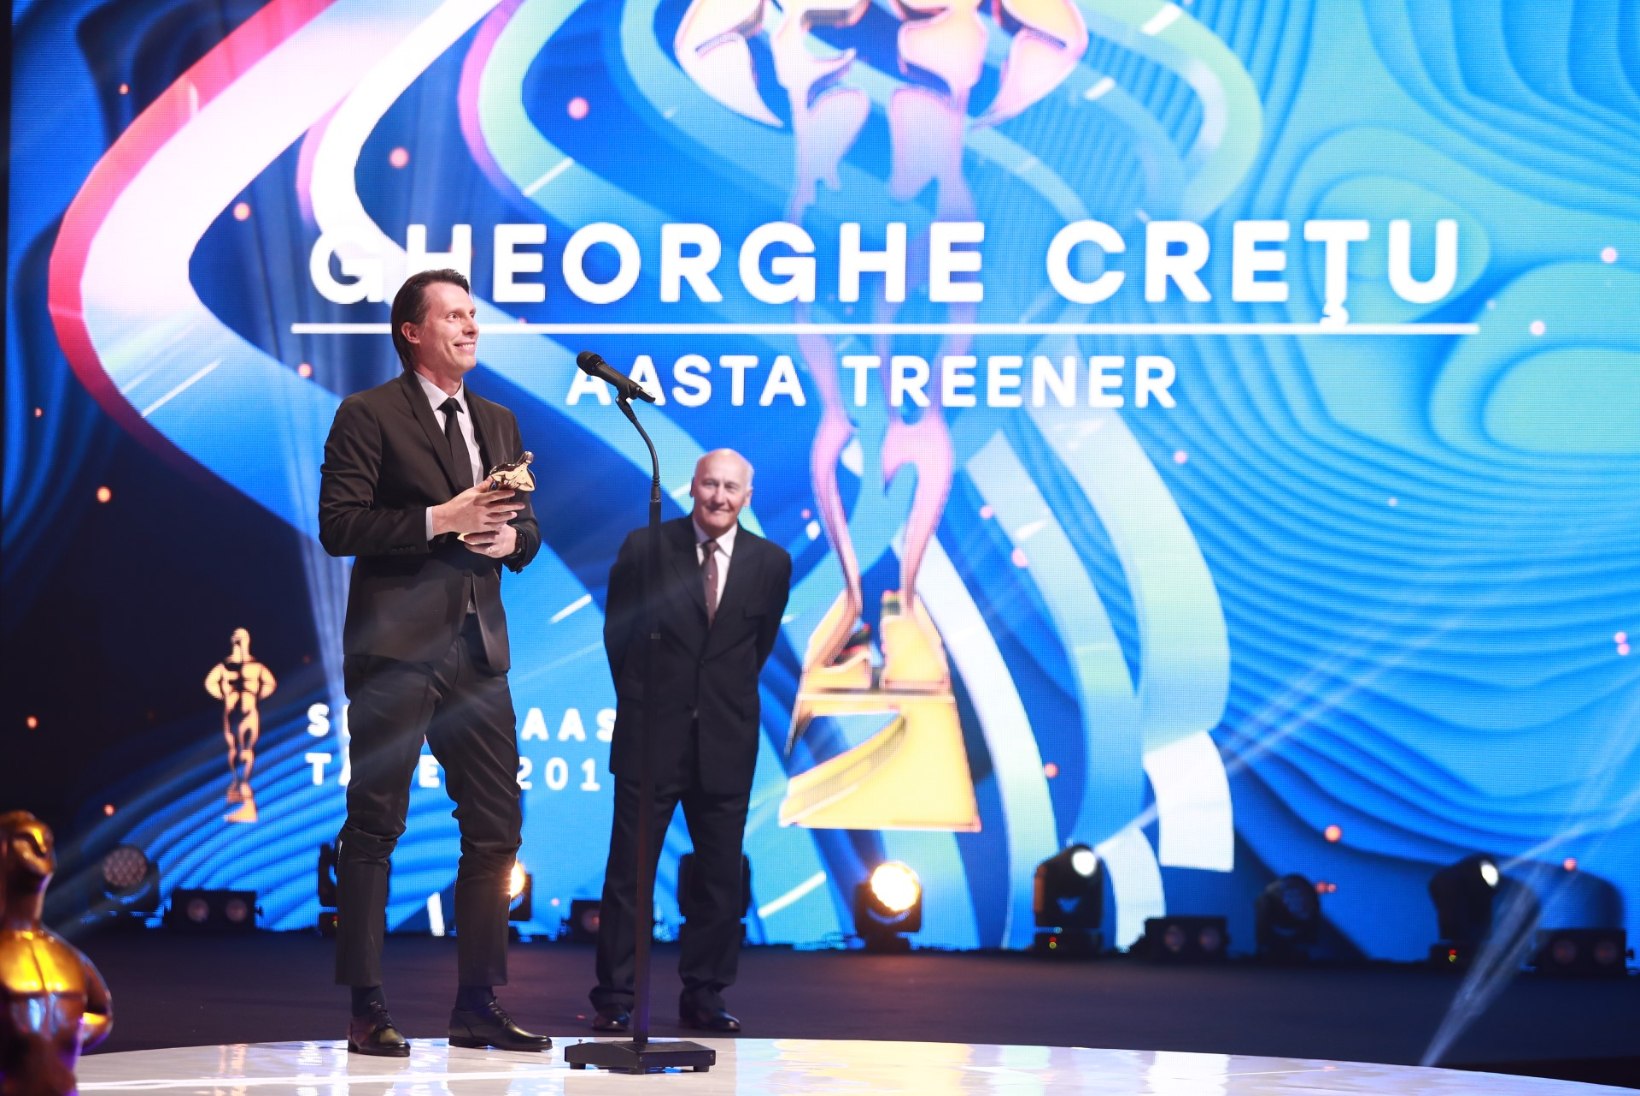 Aasta treener 2017 - Gheorghe Cretu